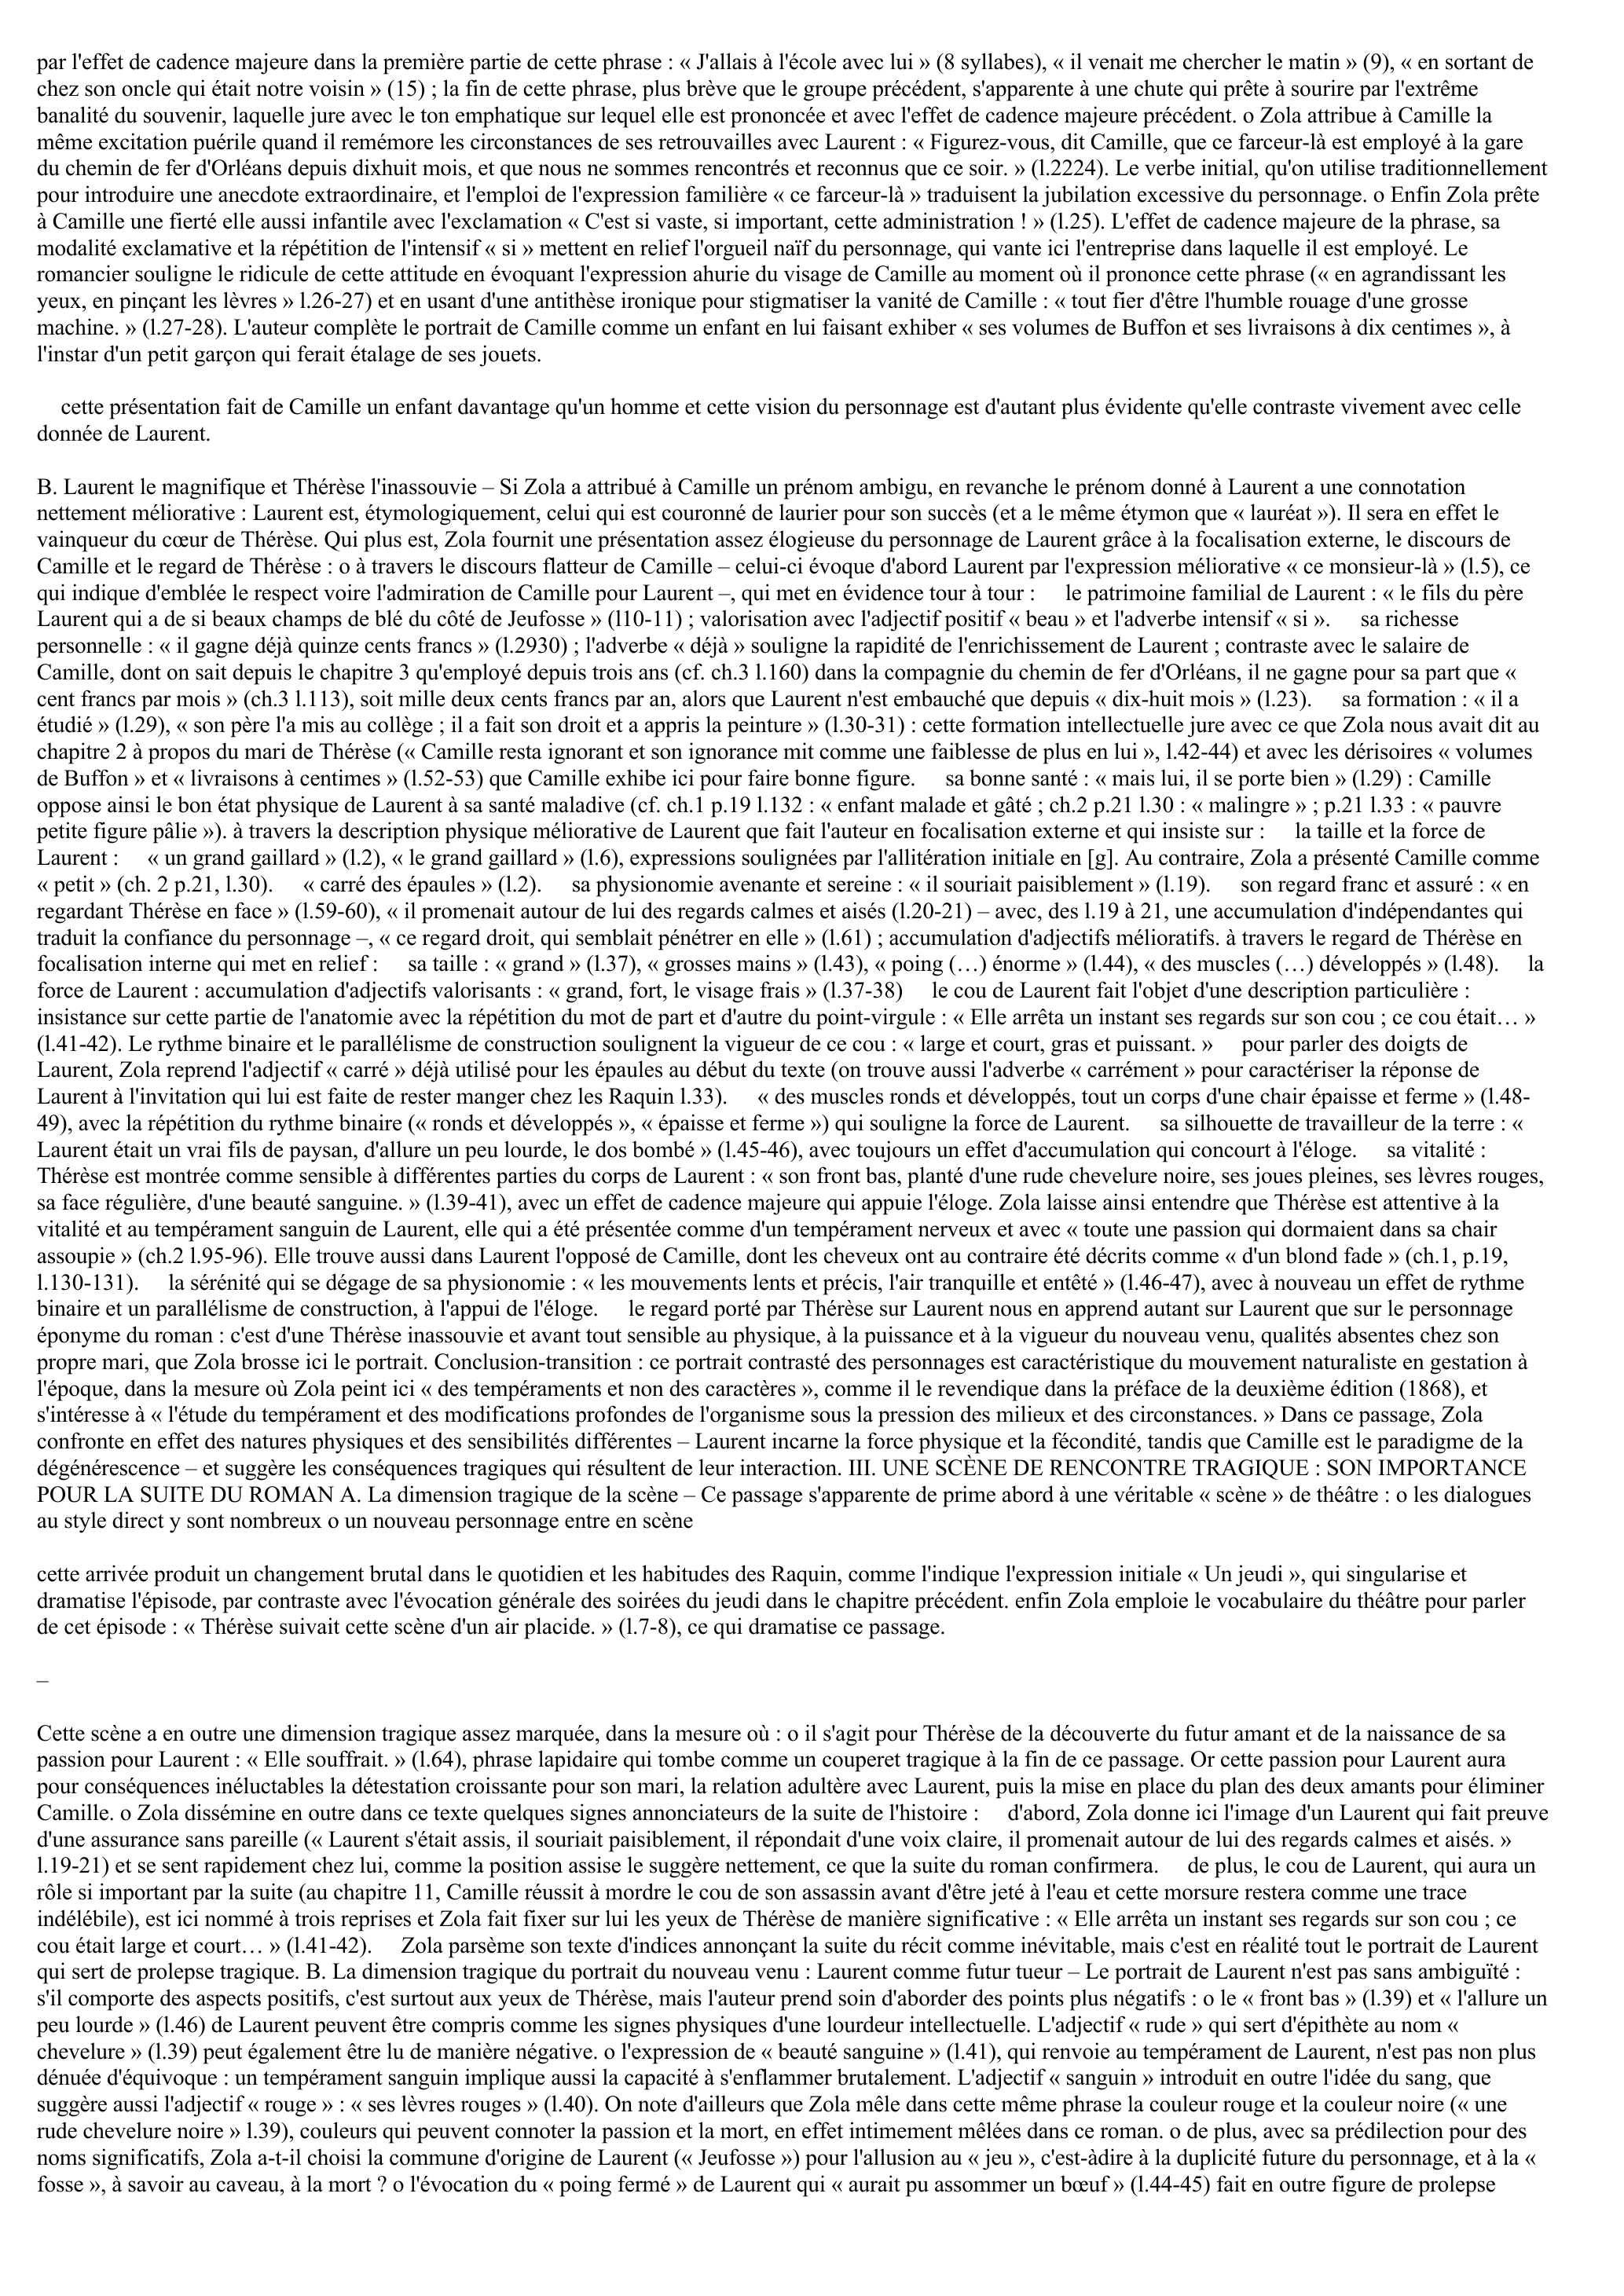 Prévisualisation du document COMMENTAIRE DU DÉBUT DU CHAPITRE 5 DE THÉRÈSE RAQUIN (1867) D'ÉMILE ZOLA : LA RENCONTRE ENTRE LAURENT ET THÉRÈSE